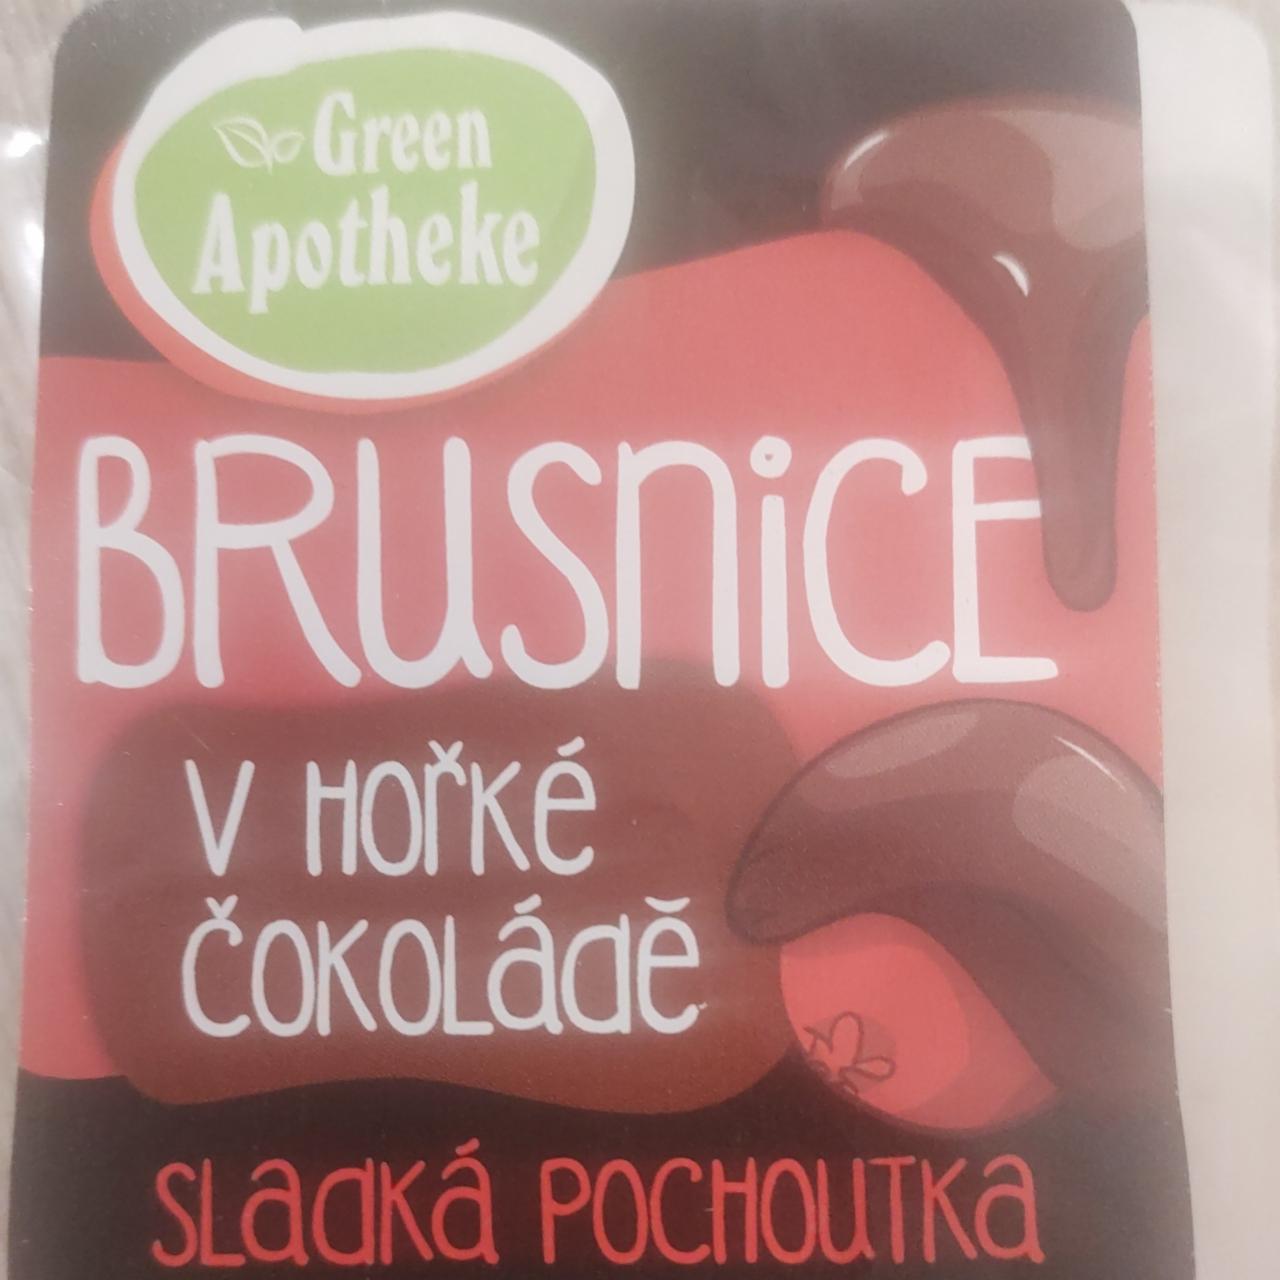 Fotografie - Brusnice v hořké čokoládě Green Apotheke